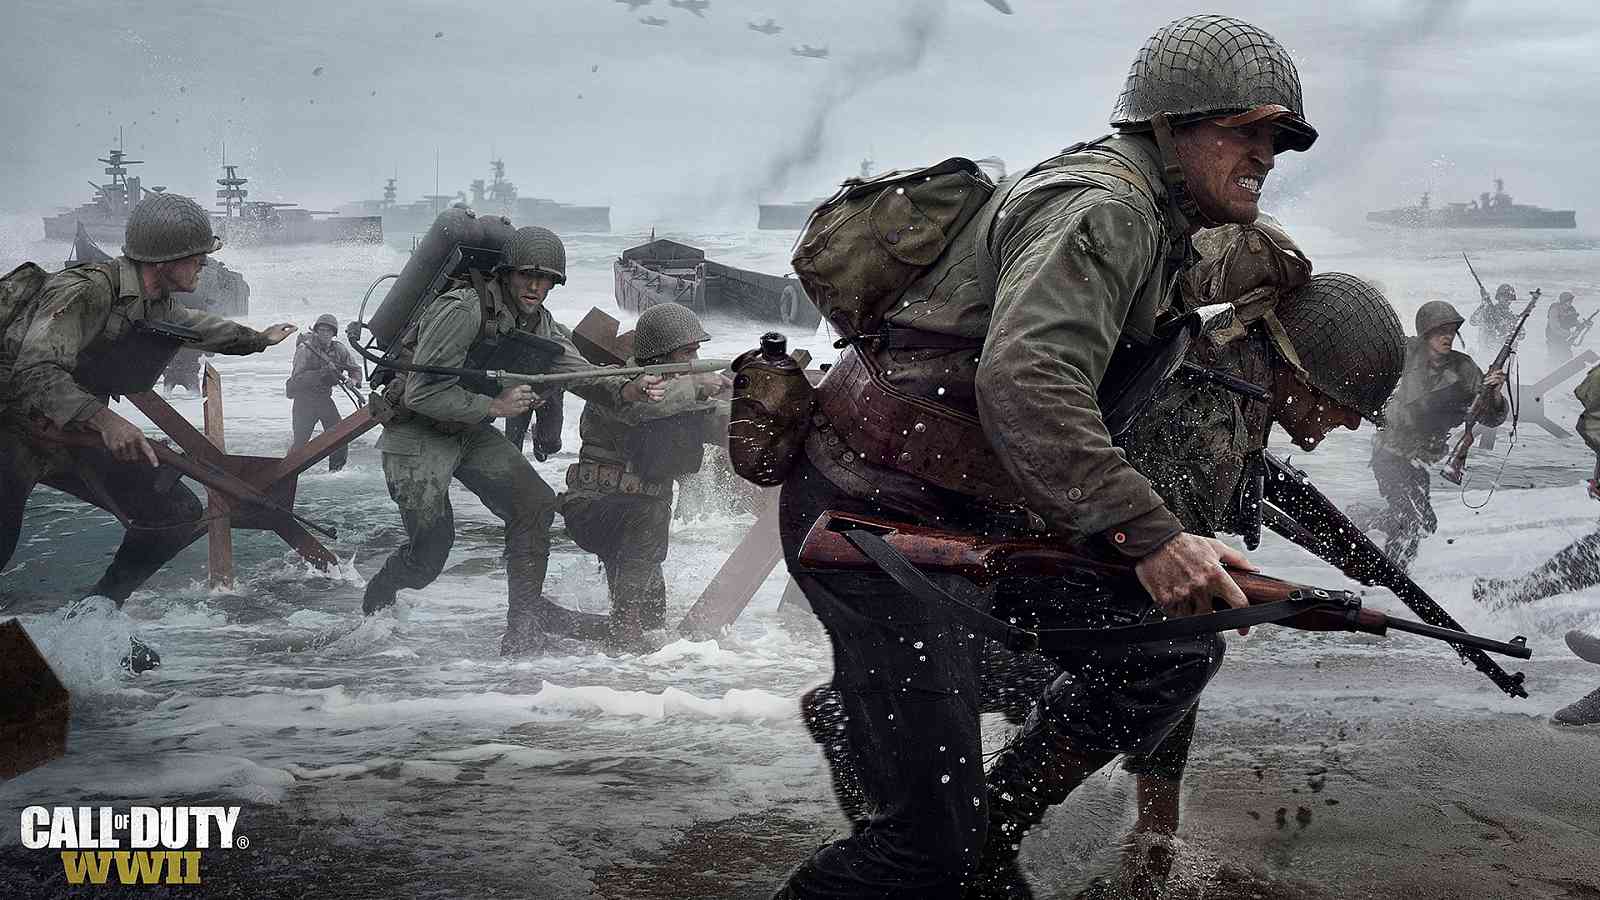 Vyzkoušejte si multiplayer Call of Duty: WWII zdarma